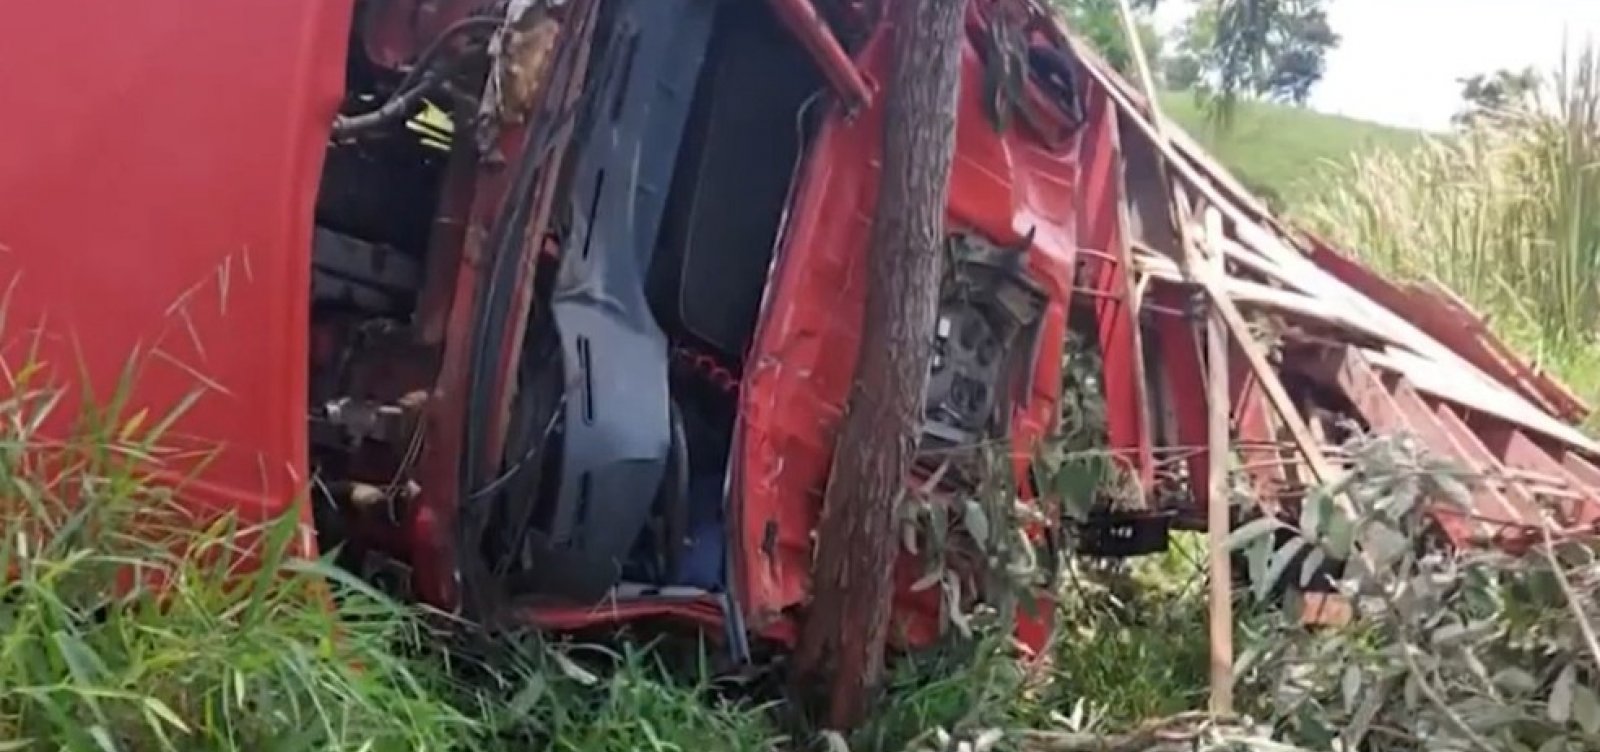 Duas pessoas morrem em acidente envolvendo caminhão no oeste da Bahia